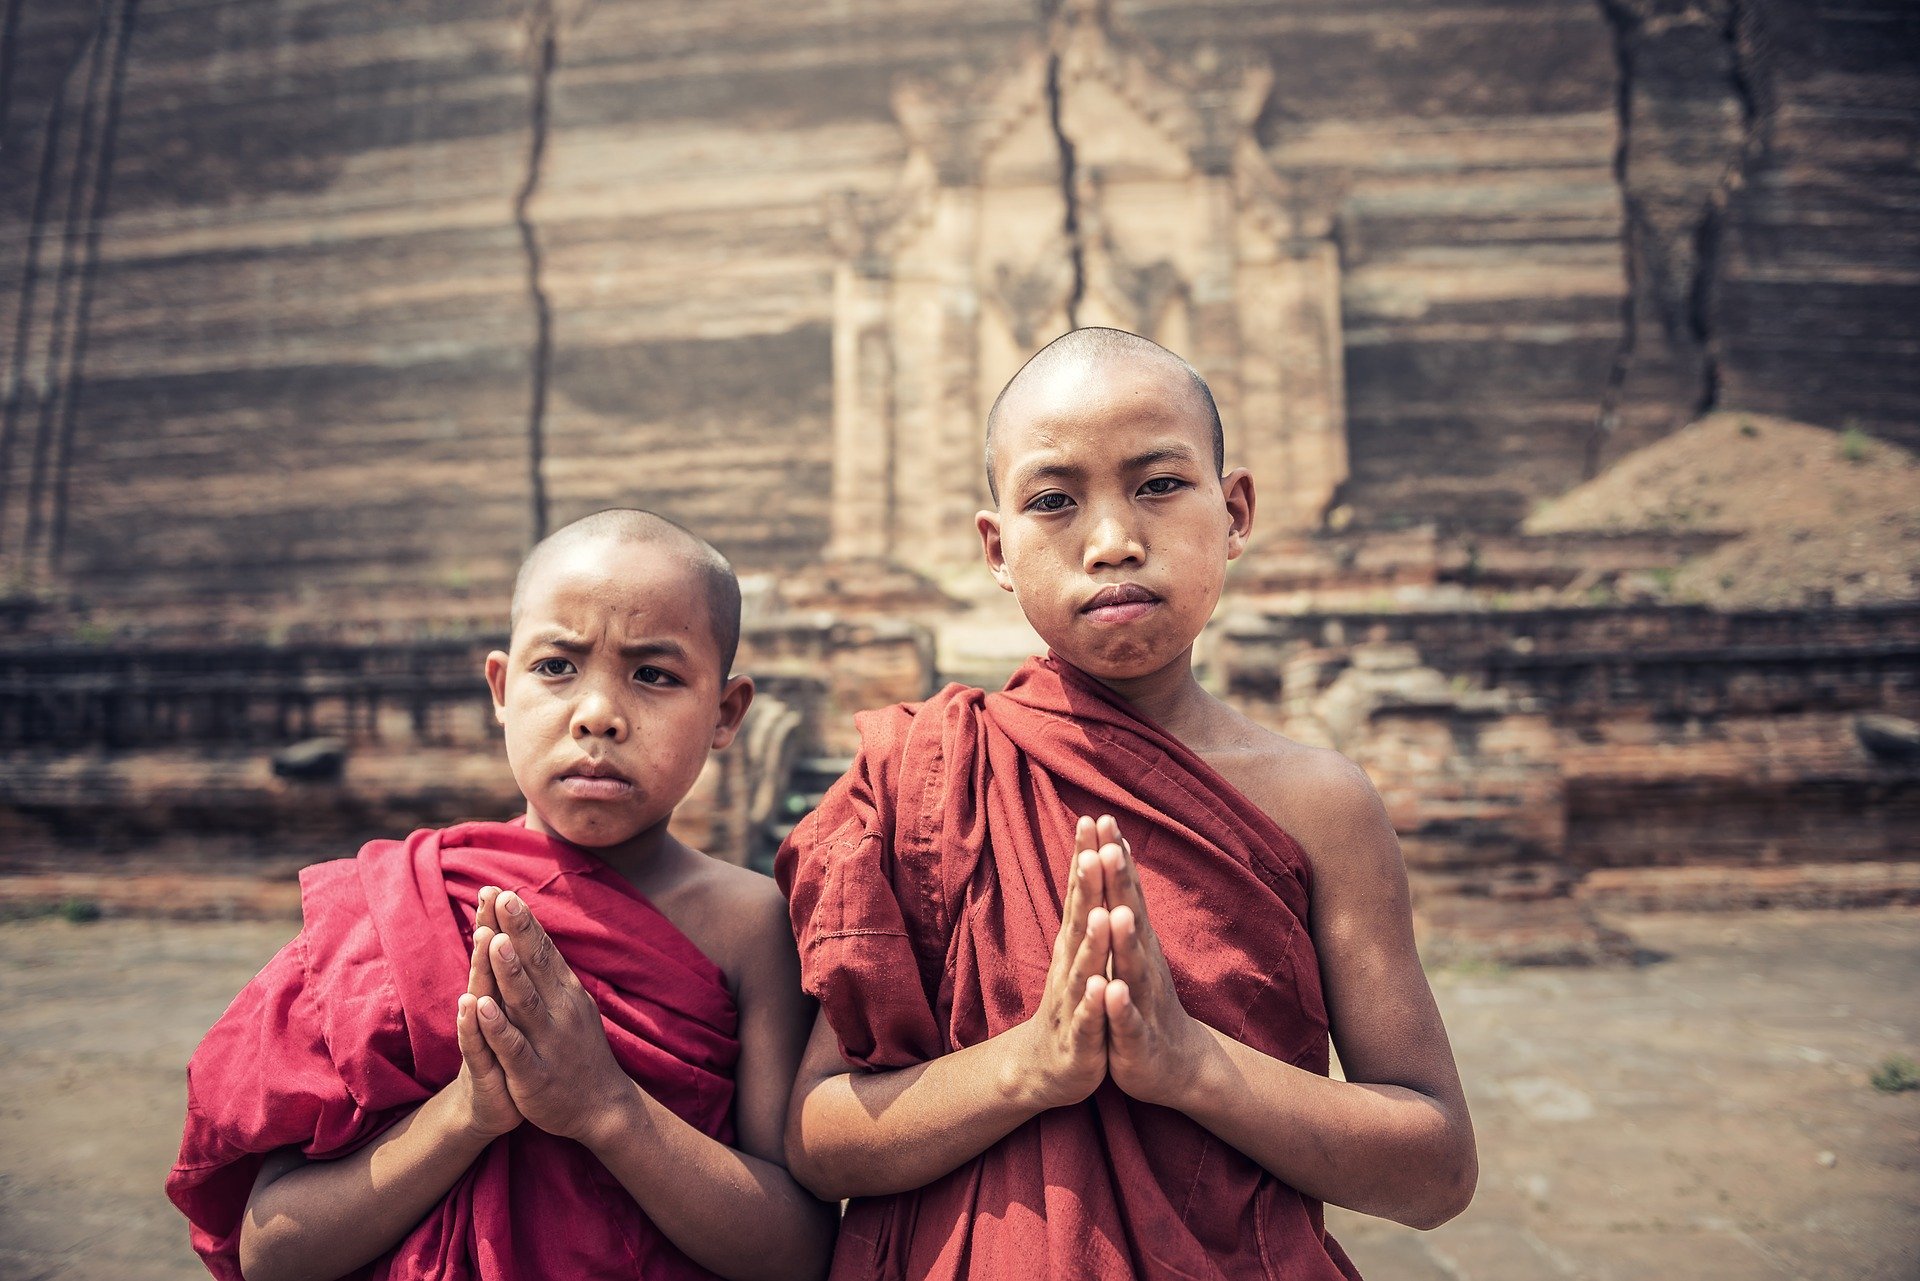 Meninos com as cabeças raspadas e vestes de monge com as mãos unidas em sinal de oração